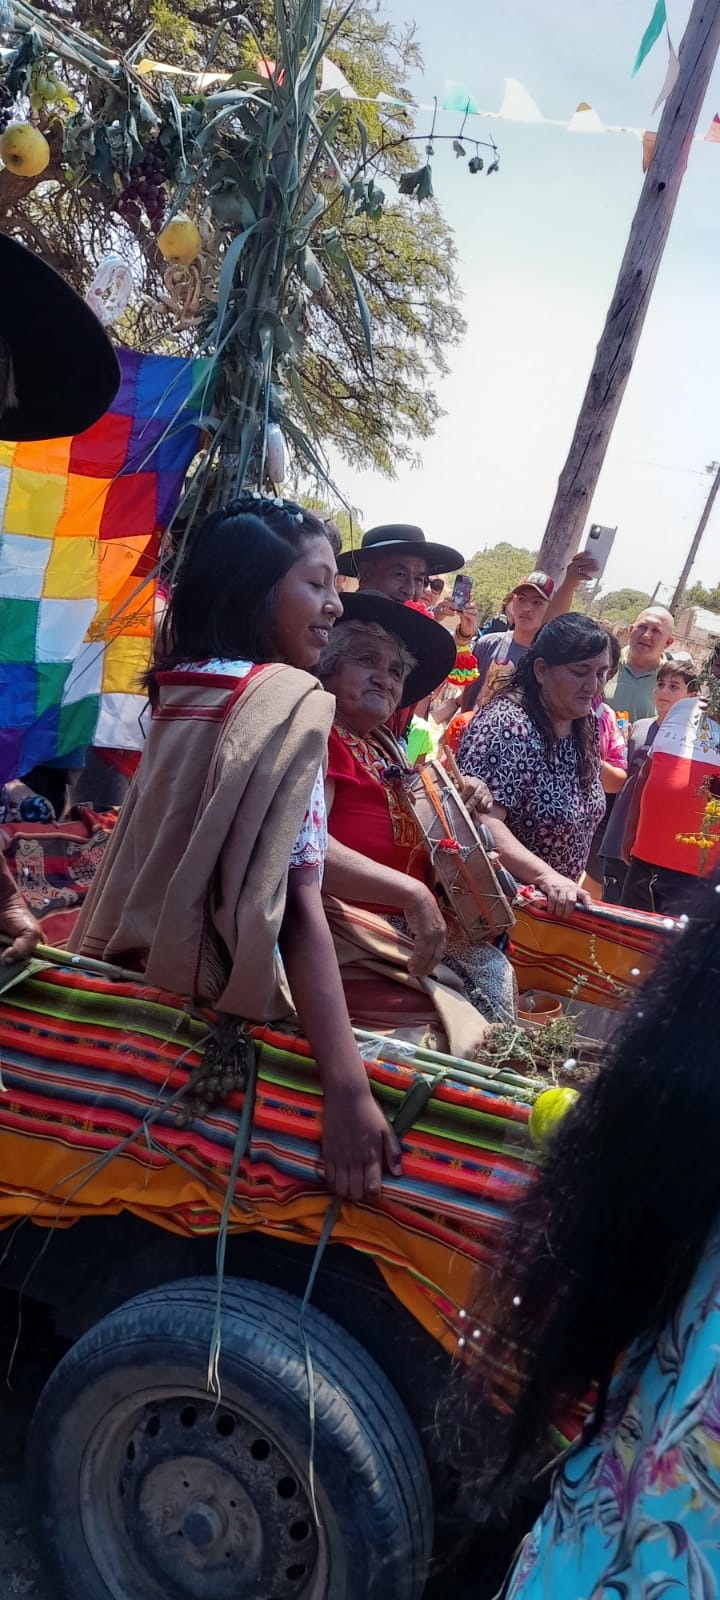 FELISA YAPURA. Elegida por el Consejo de Ancianos, la nueva Pachamama es llevada en la carroza durante el evento en el que fue escogida como representante de la Madre Tierra.